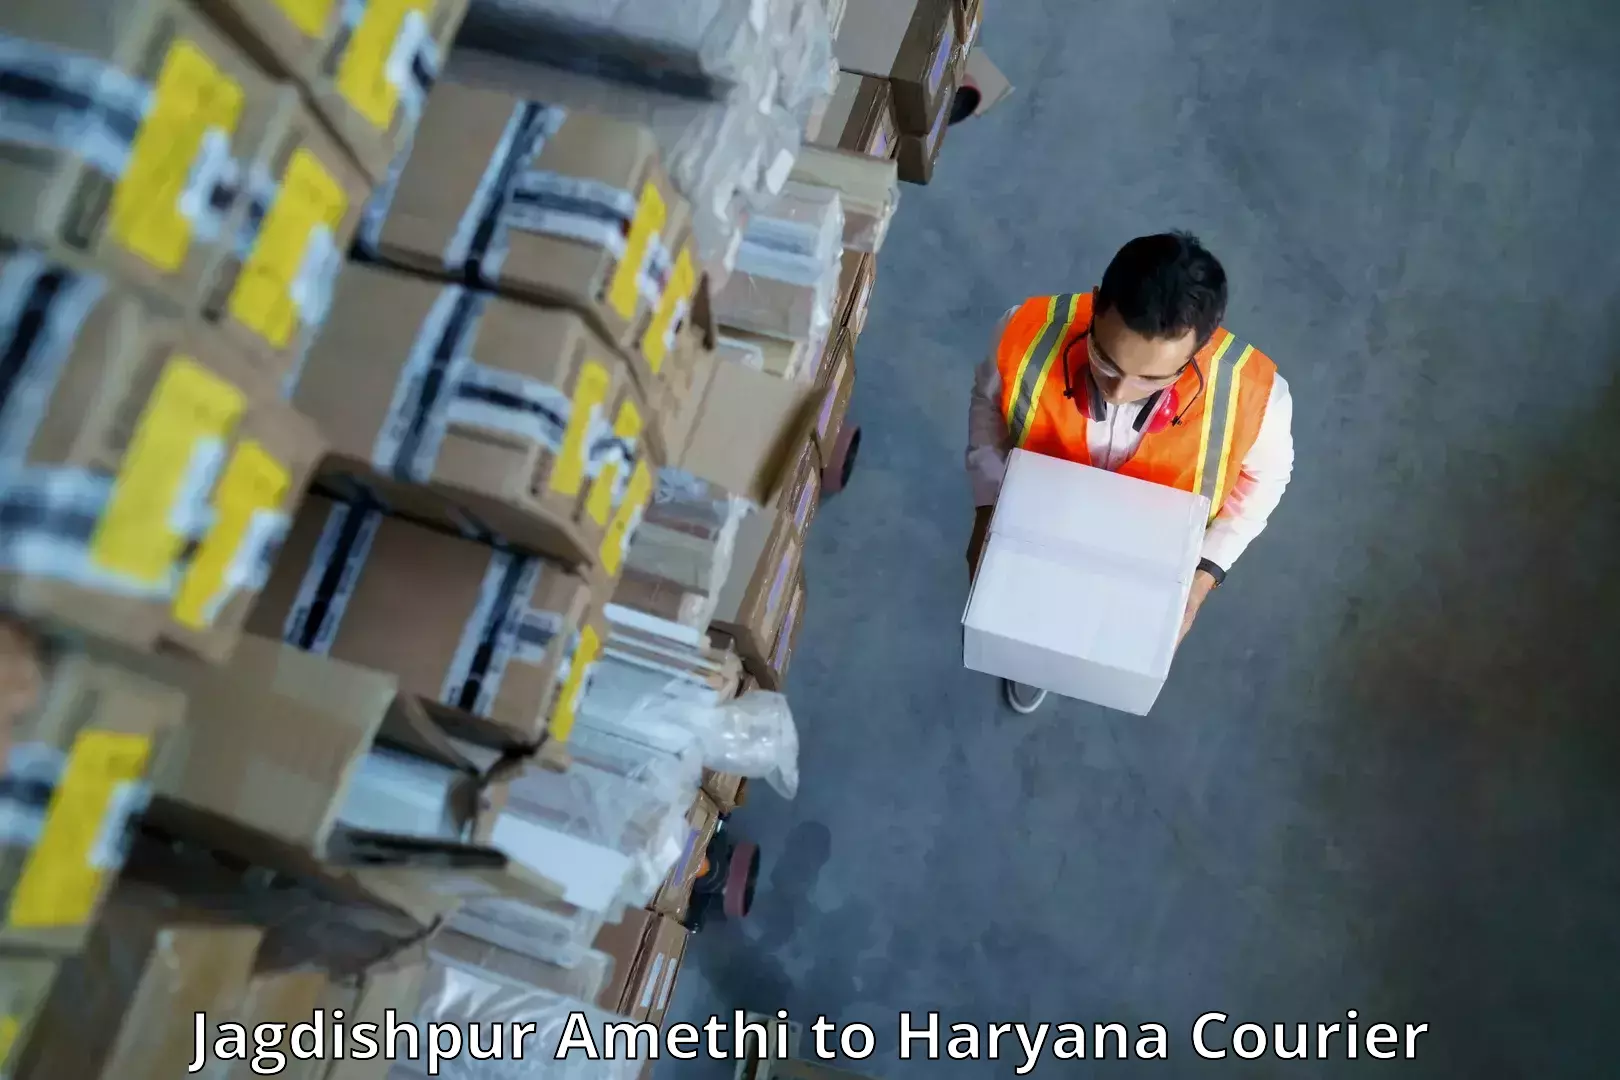 High-capacity parcel service Jagdishpur Amethi to Jhajjar